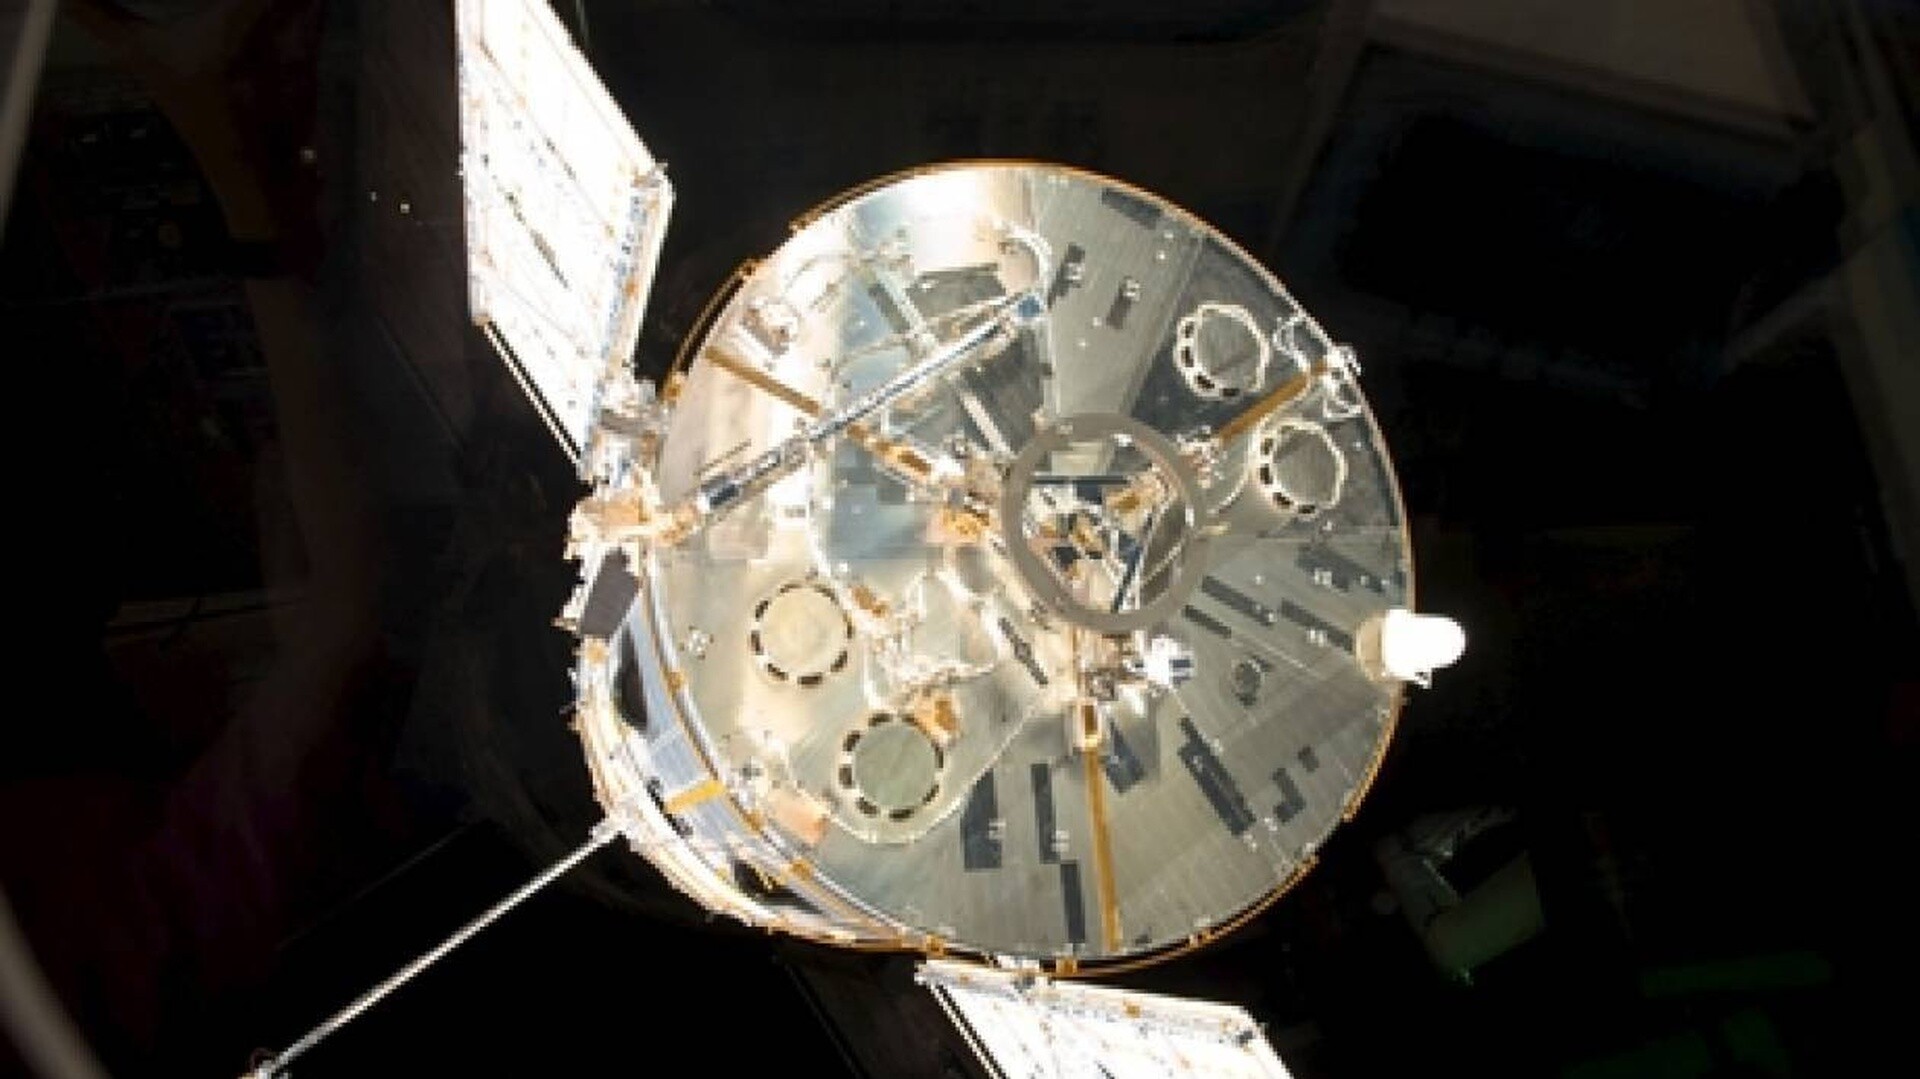 Διάστημα: 34 χρόνια από την εκτόξευση του διαστημικού τηλεσκοπίου Hubble